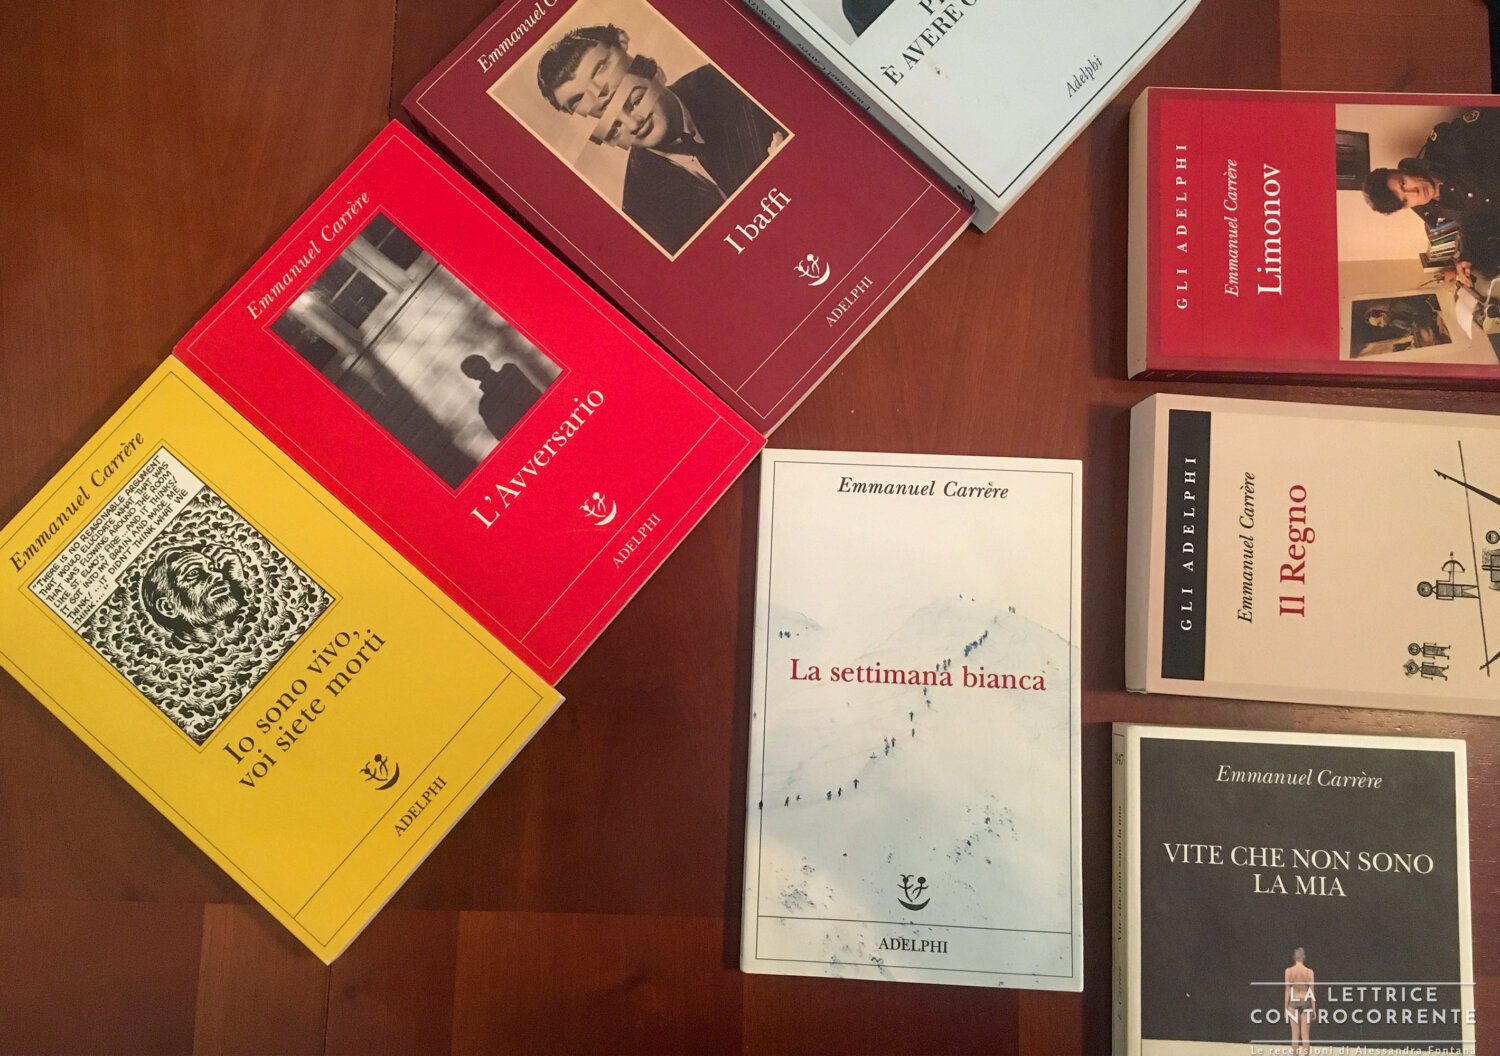 RECENSIONE: La settimana bianca (Emmanuel Carrère) - La lettrice  controcorrente